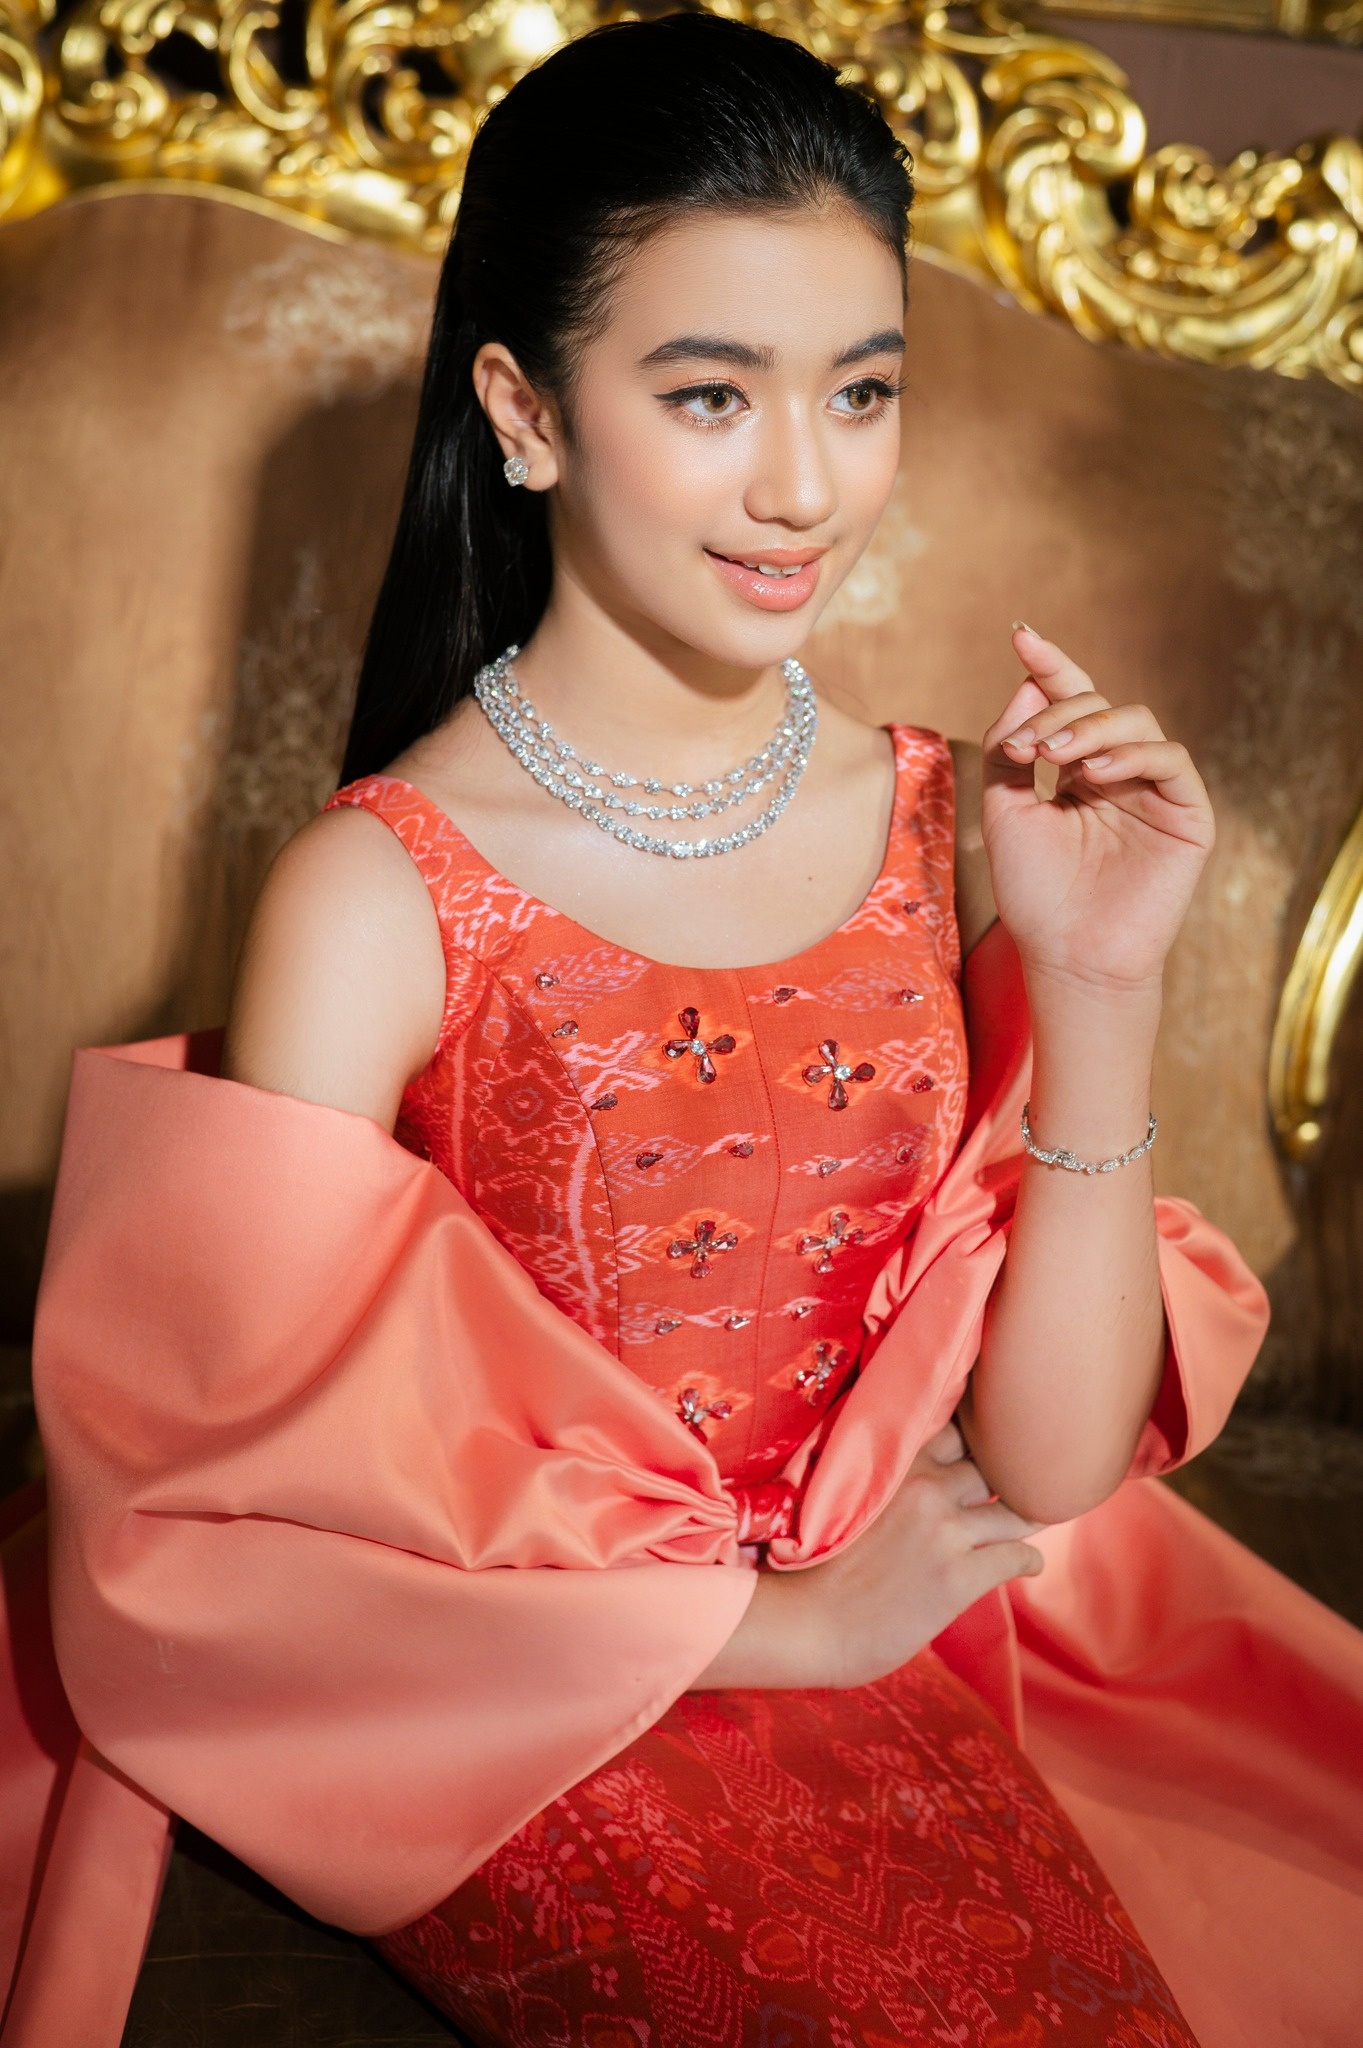 Dù tuổi còn nhỏ nhưng tiểu công chúa Campuchia toát lên thần thái quý tộc vì thừa hưởng dòng máu hoàng gia